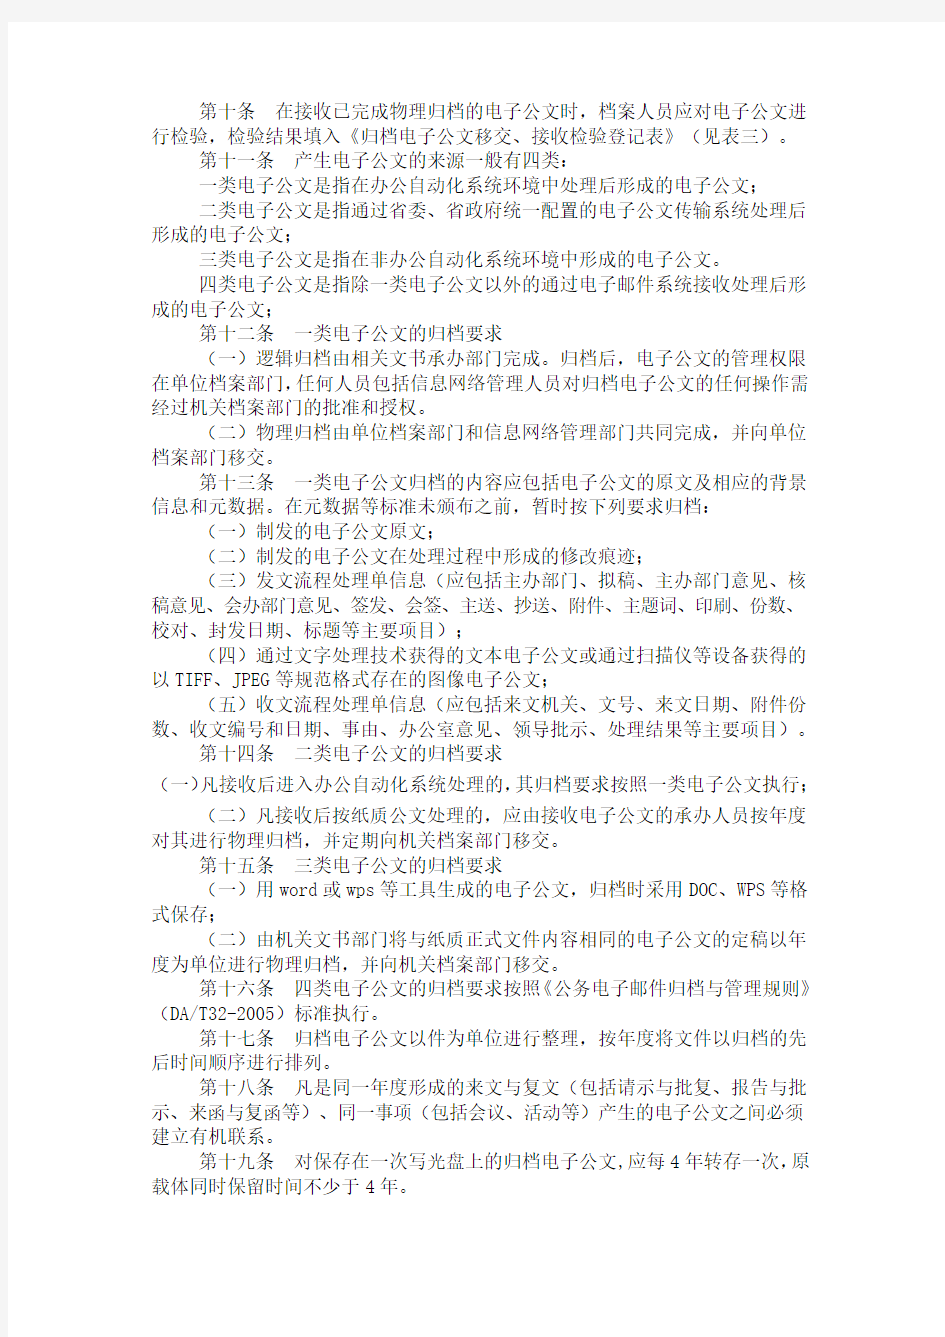 浙江省省直单位电子公文归档管理暂行办法